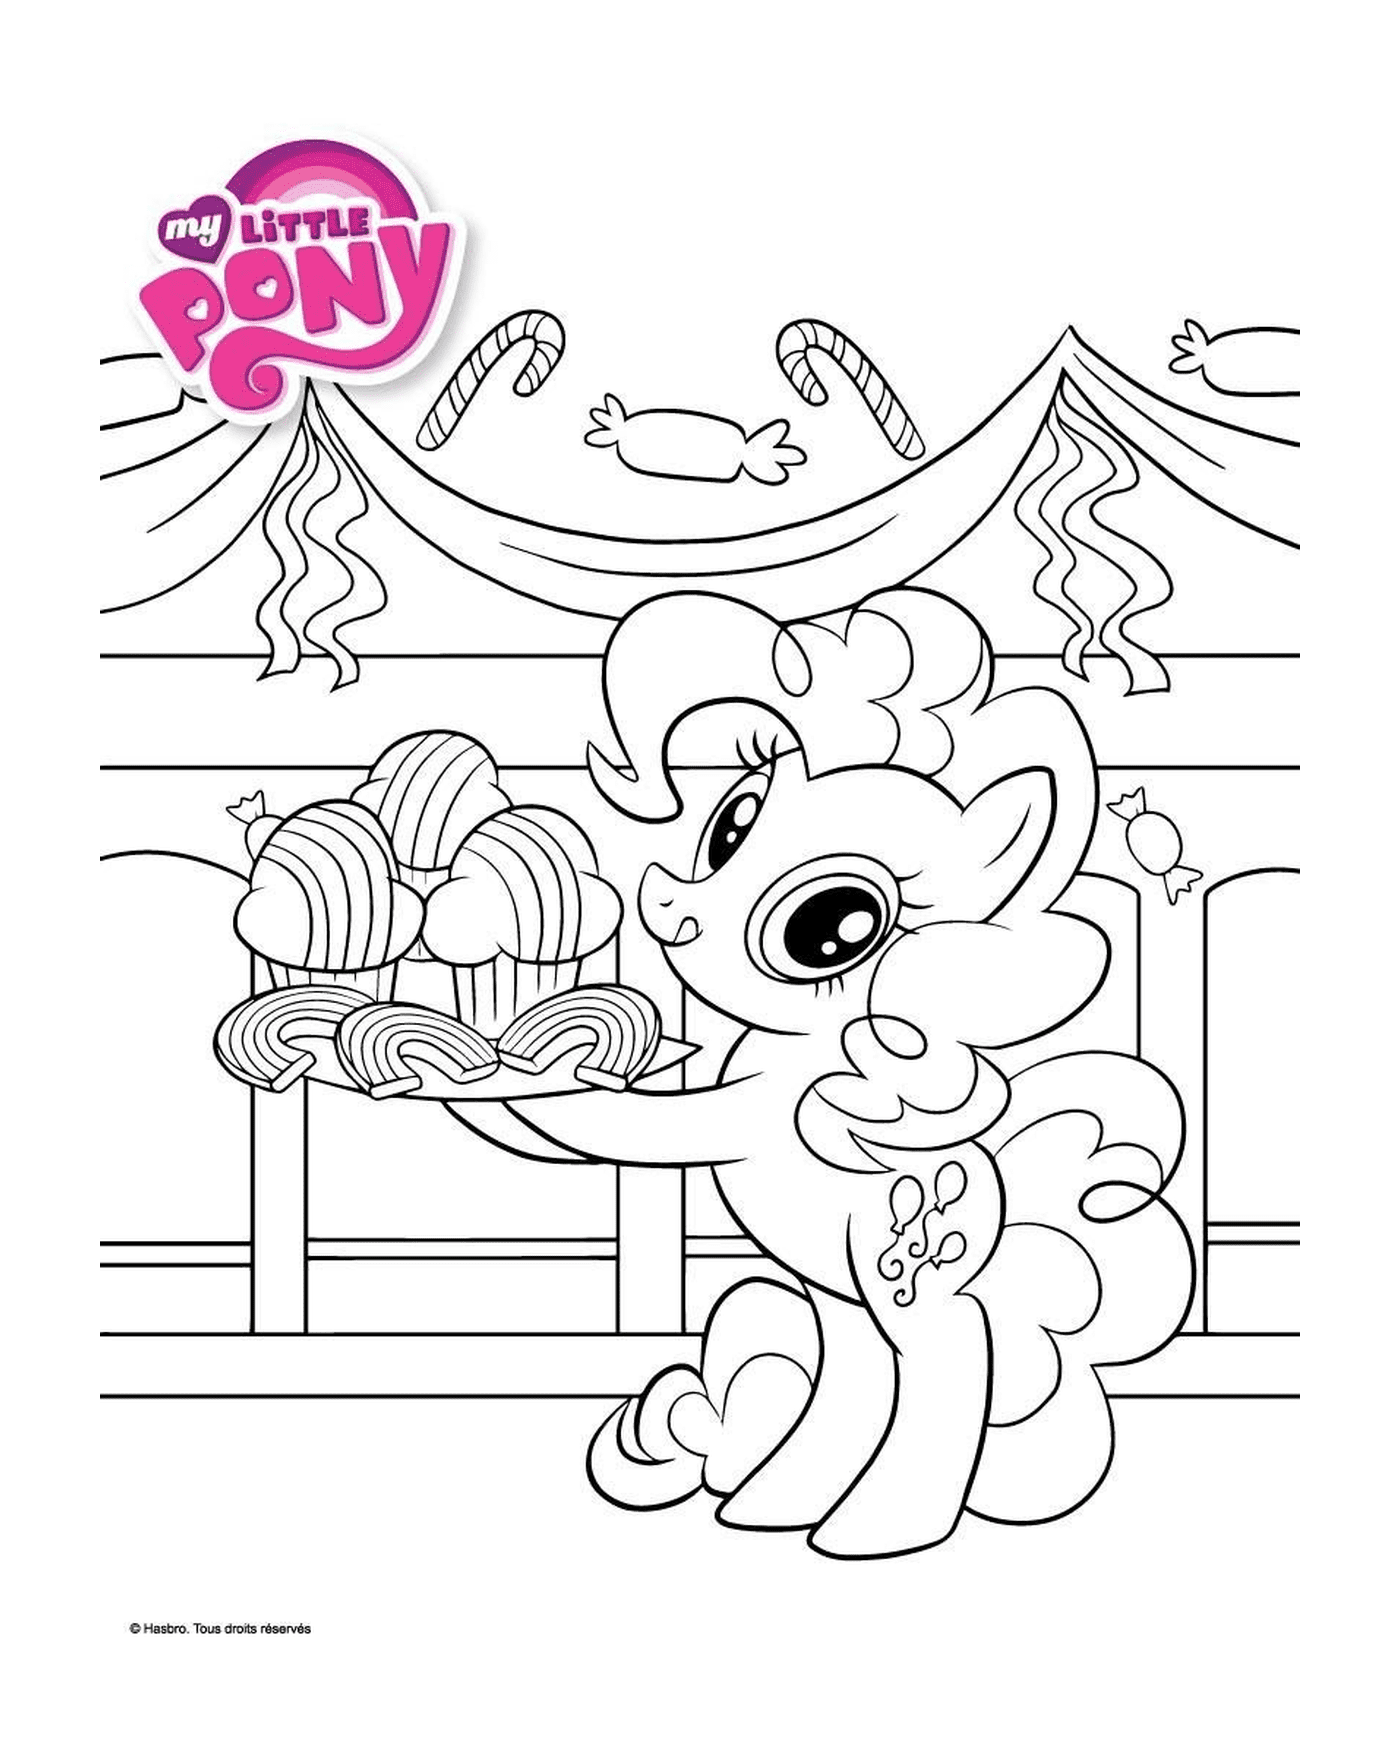  Pony holding a cupcake tray 